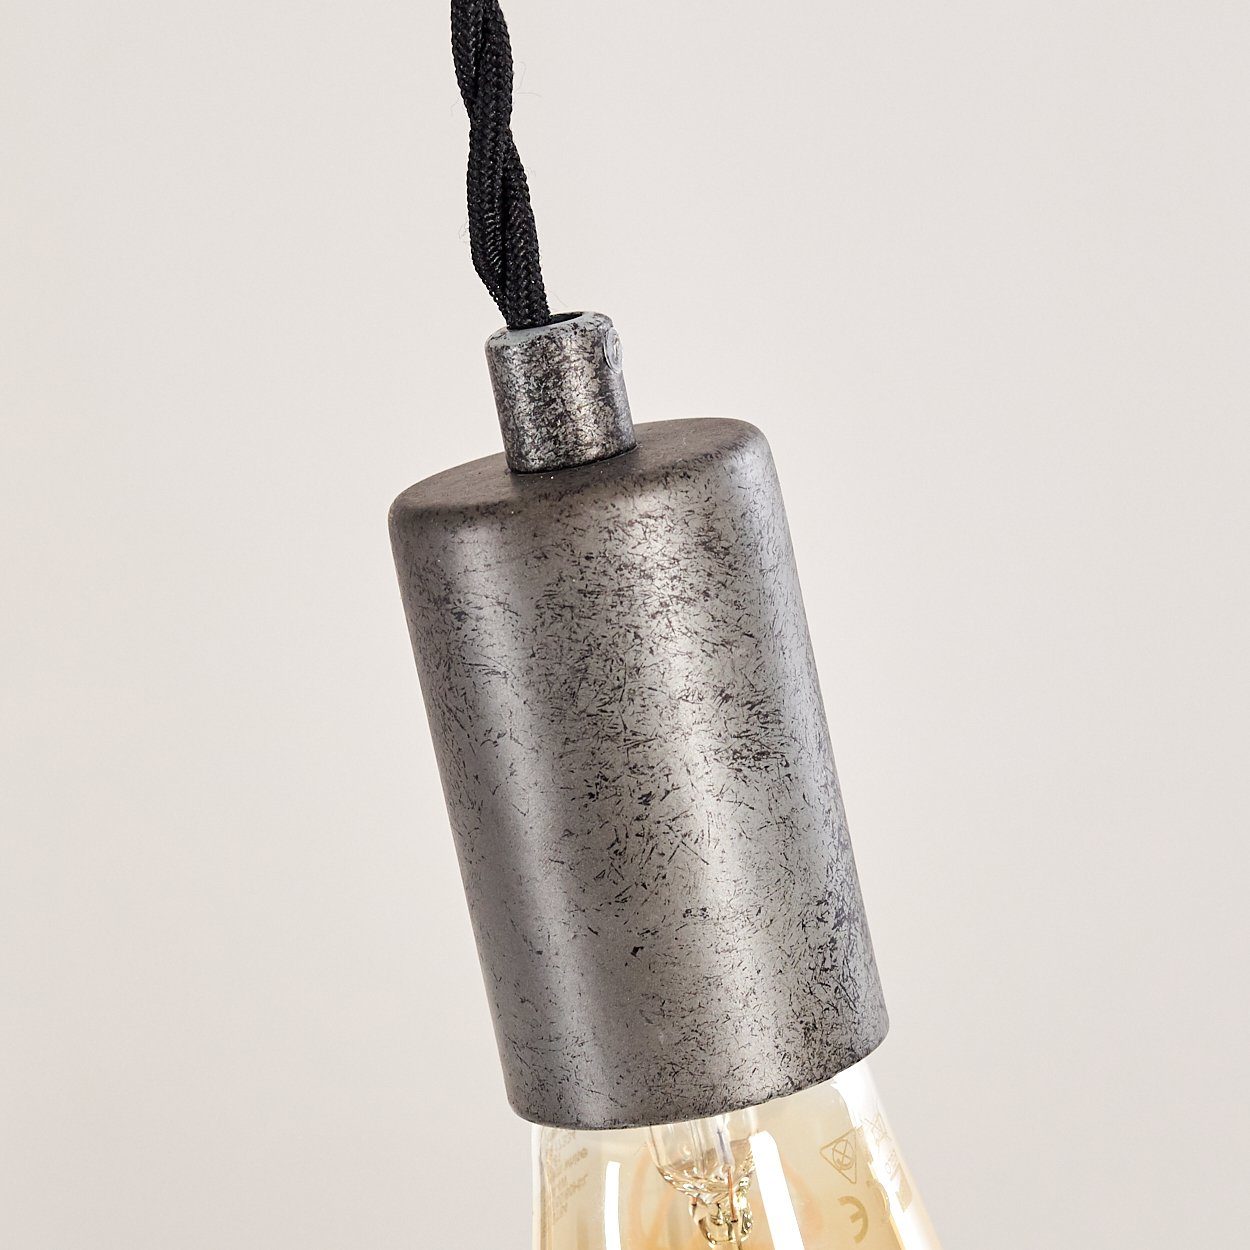 Dunkelgrau/Braun, moderne Pendelleuchte aus Gitter-Optik, ohne Käfig, längliche Hängelampe Leuchtmittel, »Lorica« hofstein in Metall/Bambus 5xE27,